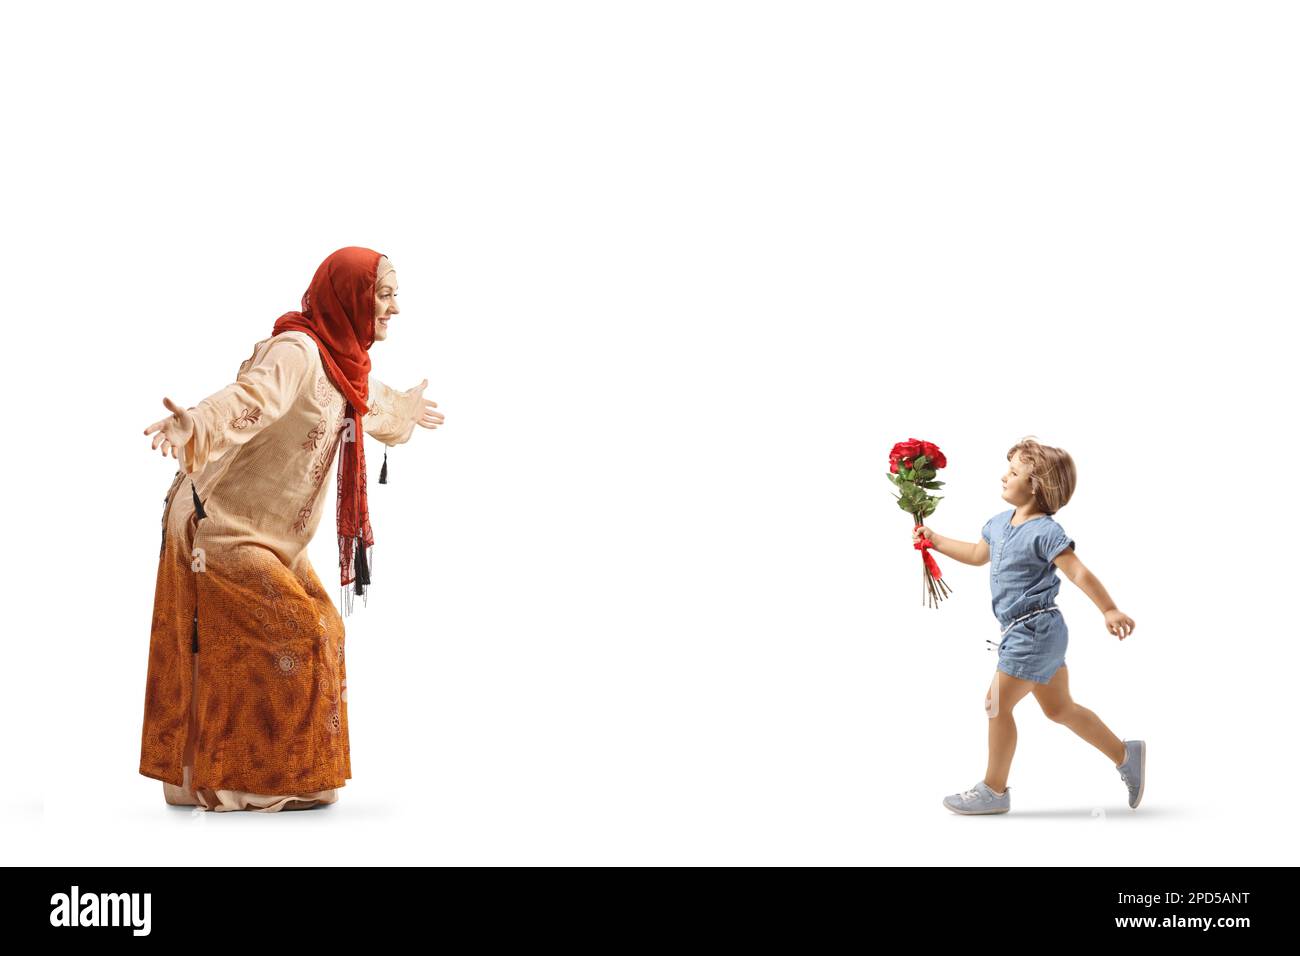 Ein Mädchen mit roten Rosen läuft auf eine muslimische Frau zu, die einen Hidschab trägt, isoliert auf weißem Hintergrund Stockfoto